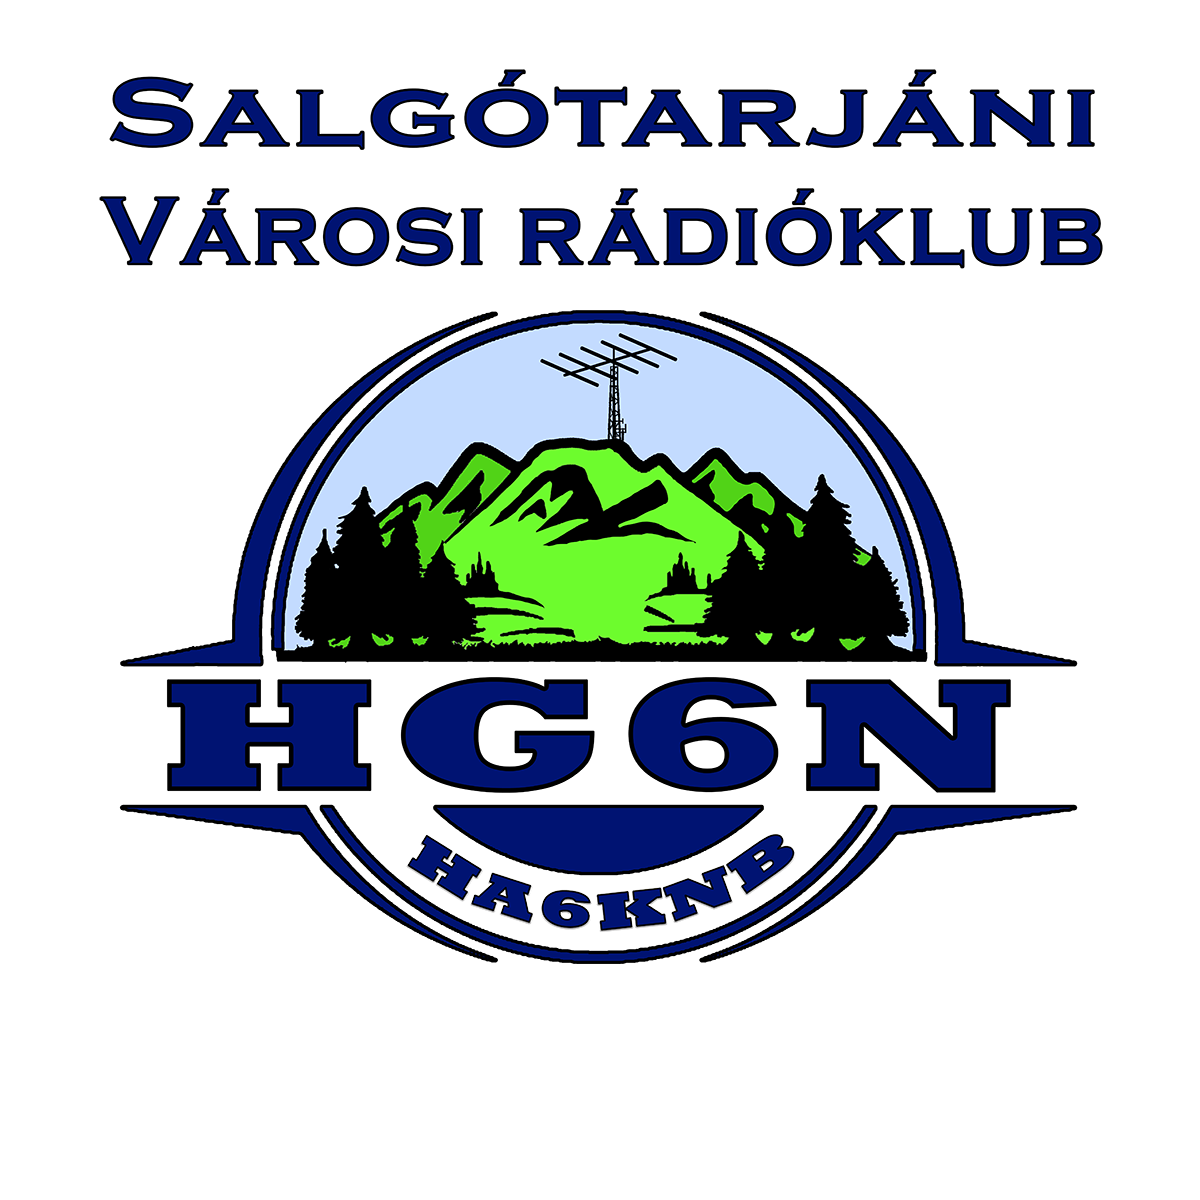 logo hg6n fb